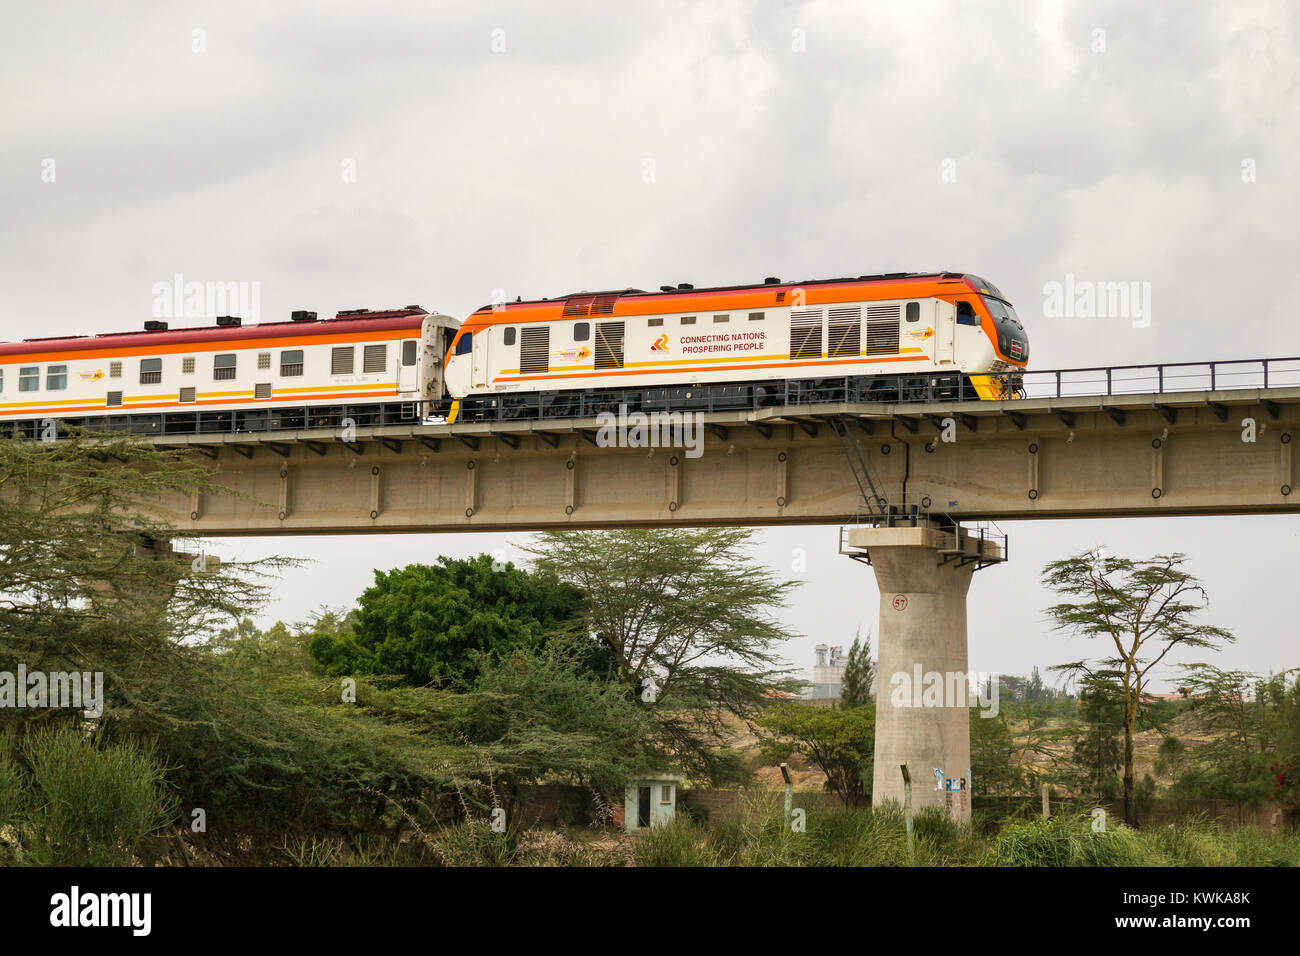 Der madaraka Express Passenger Service Zug auf einem Viadukt Abschnitt von Nairobi nach Mombasa Standard Gauge Railway SGR, Kenia Reisen Stockfoto